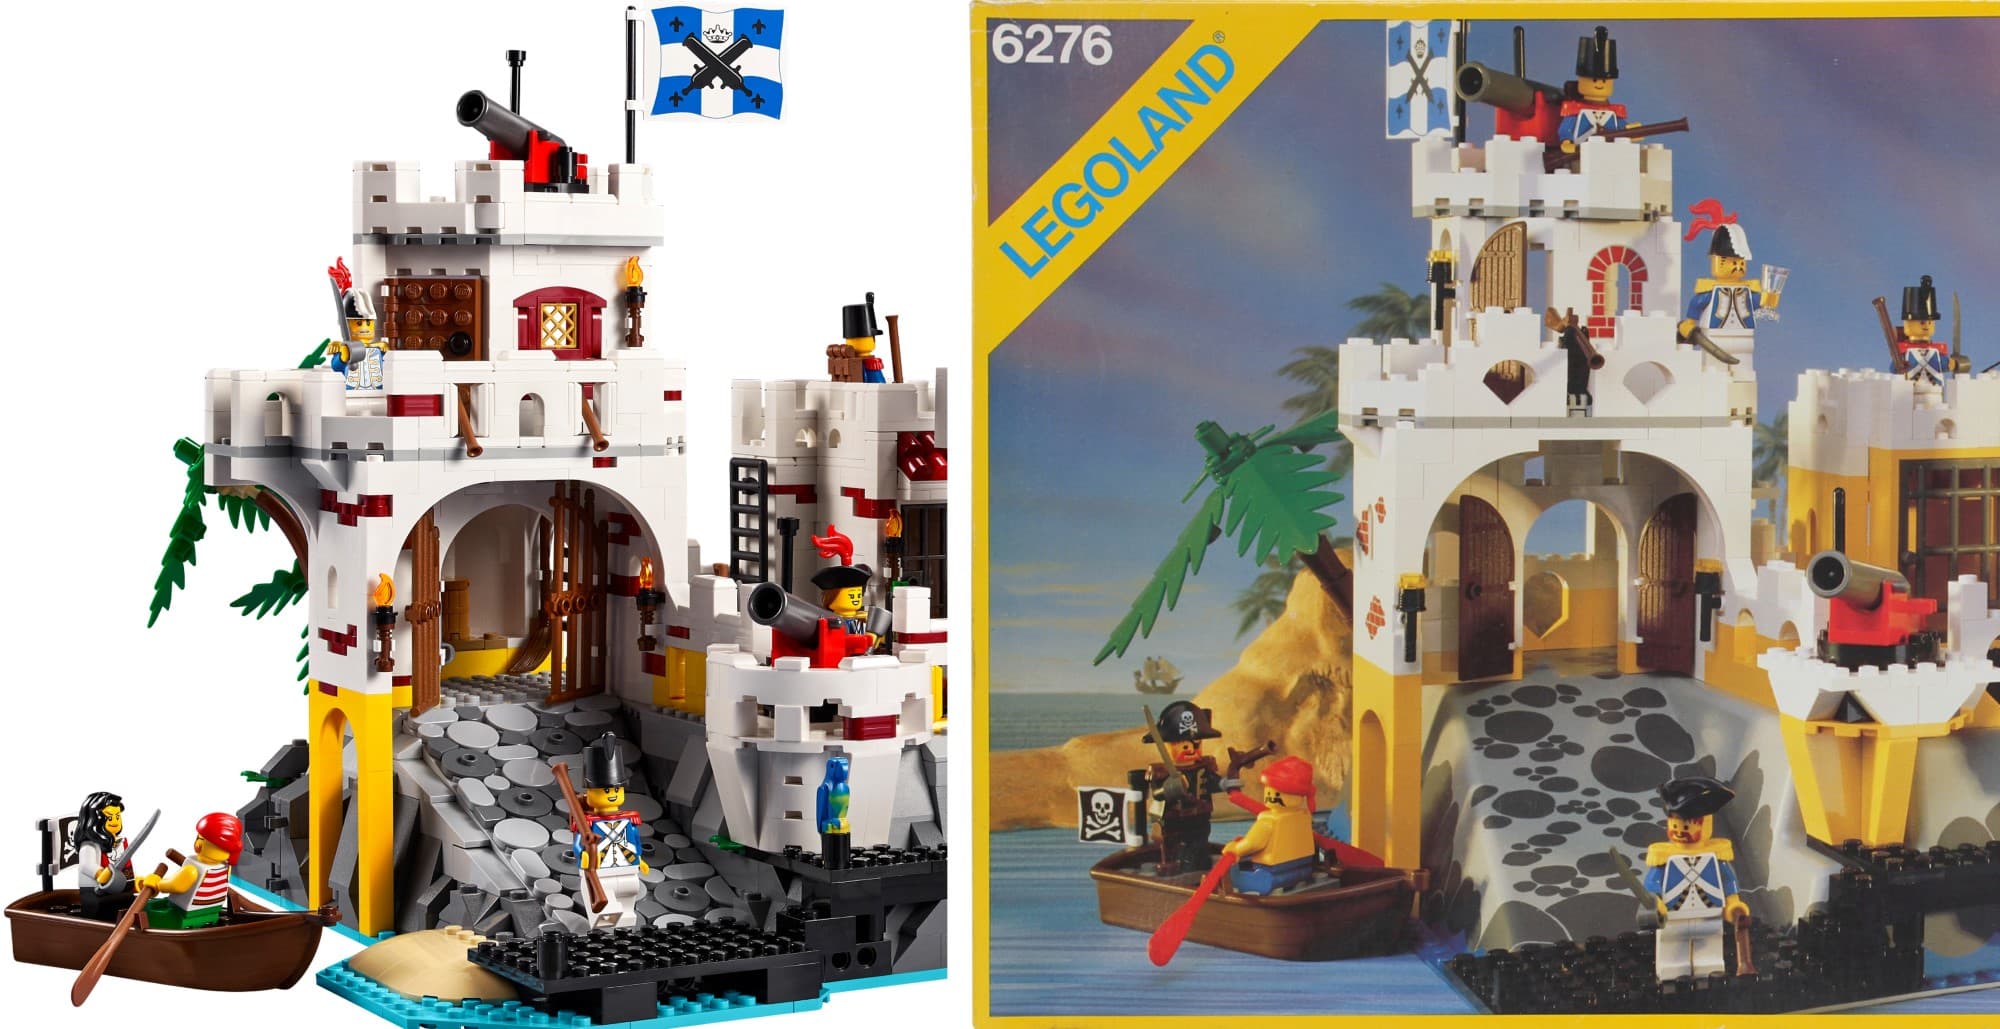 LEGO 10320 Eldorado Festung Vergleich 6276 1